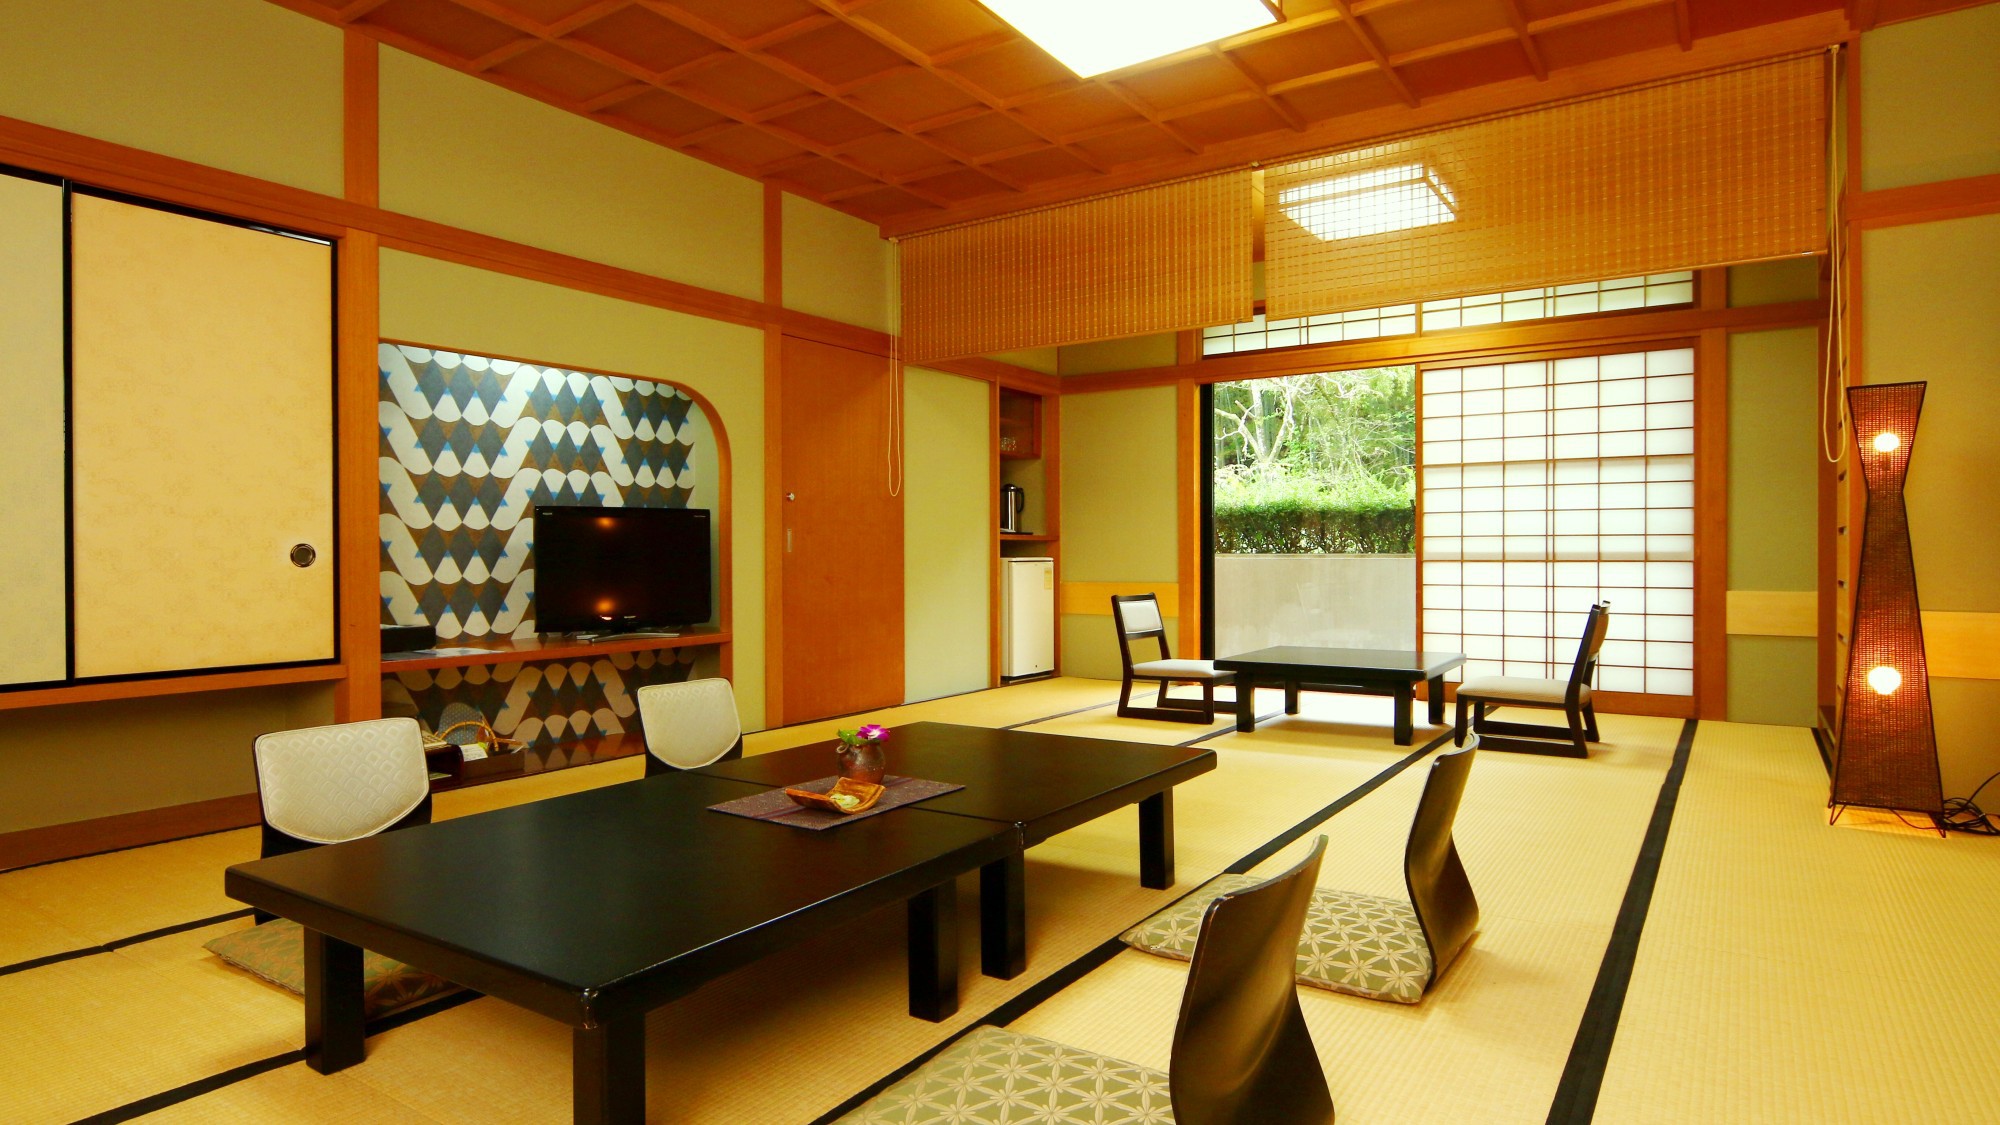 意匠を凝らした純和風造りの客室。